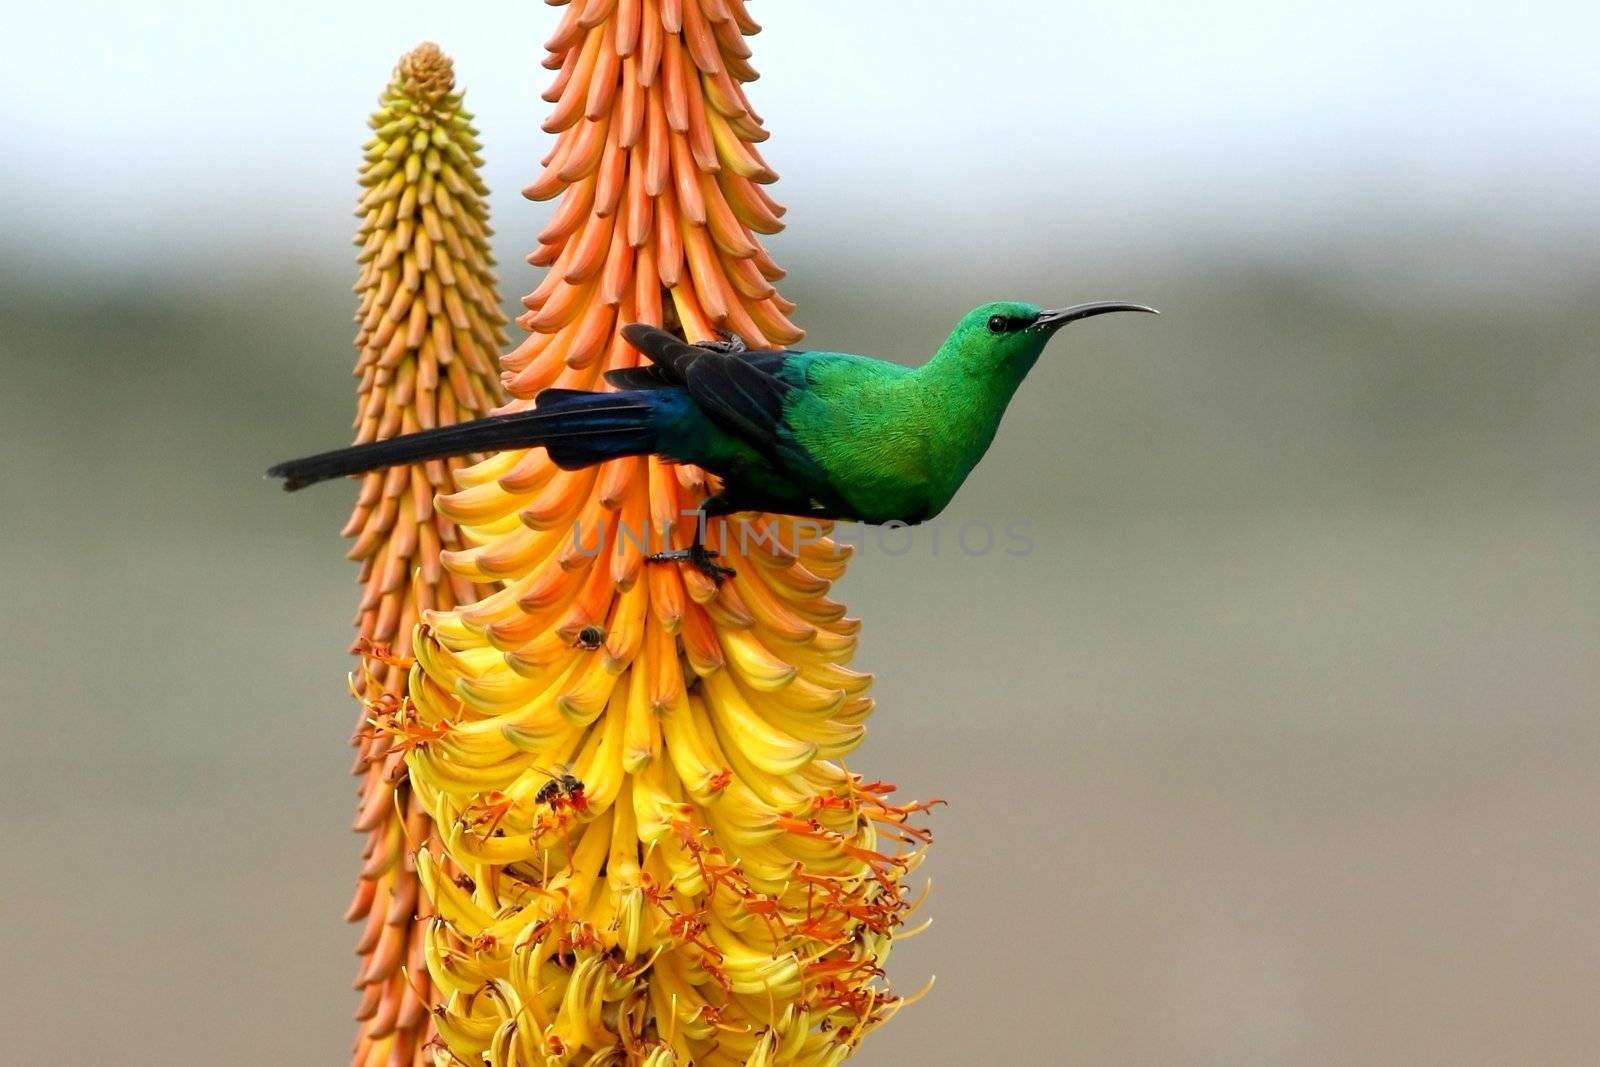 Pretty Malachite Sunbird feeding on an Aloe Flower